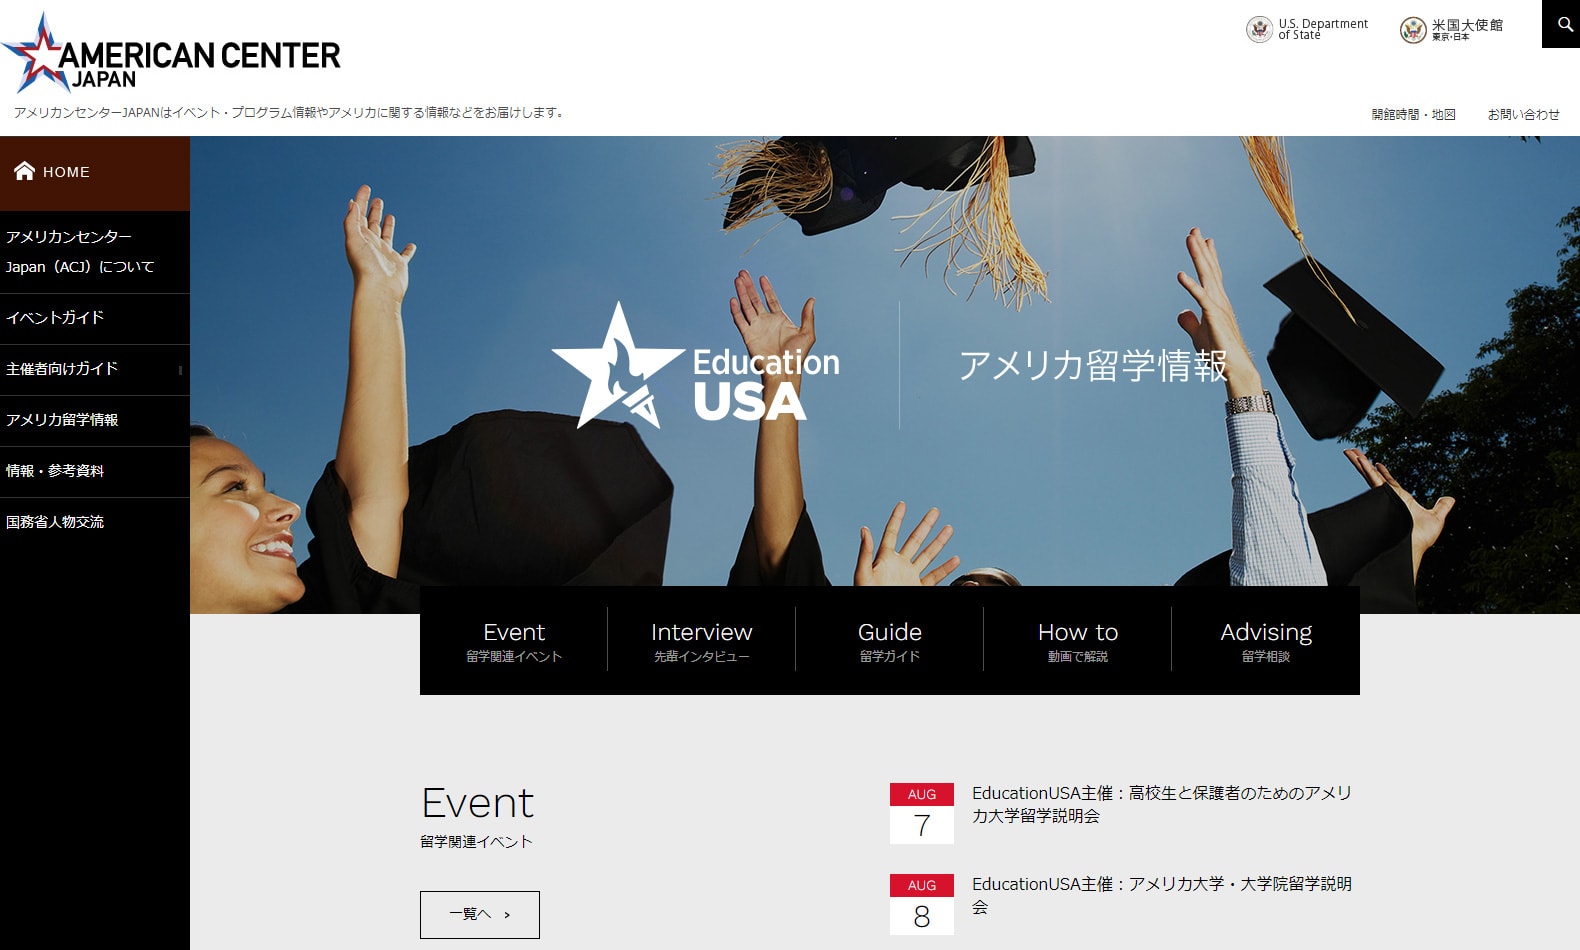 「アメリカンセンタージャパン」様サイトのページ画像1